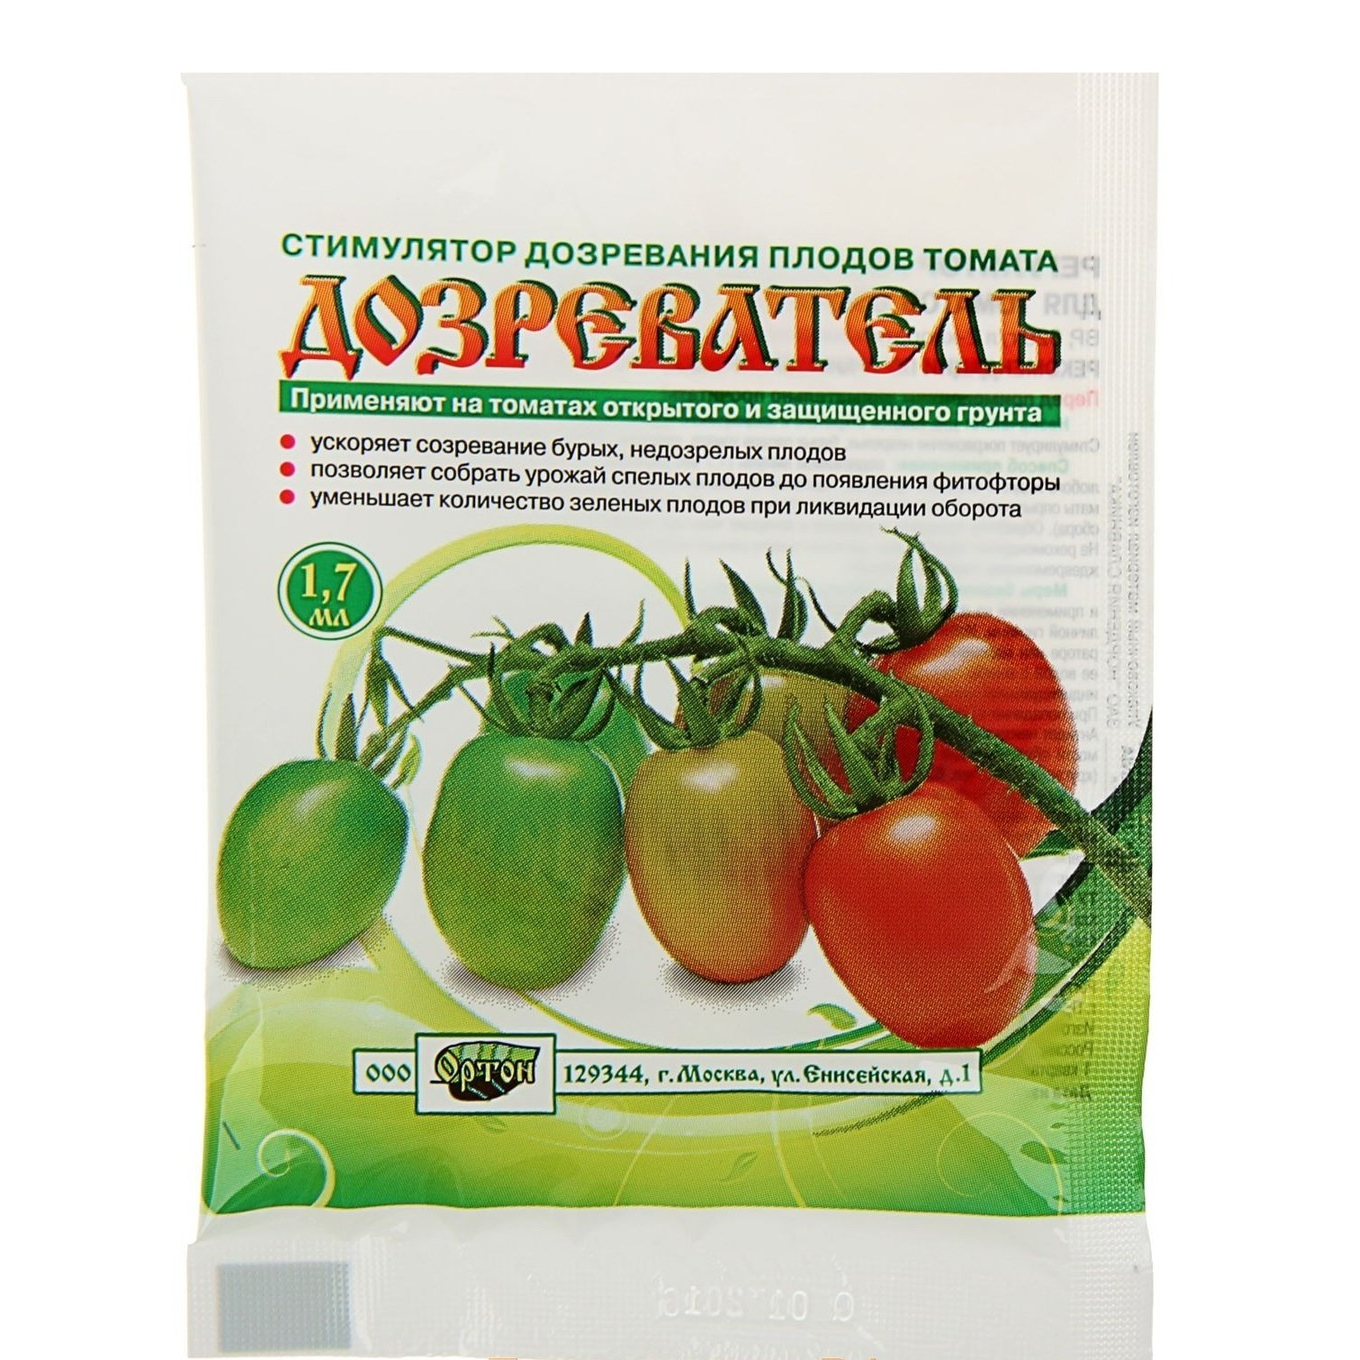 Подкормка томатов: чем подкормить помидоры для повышения урожайности